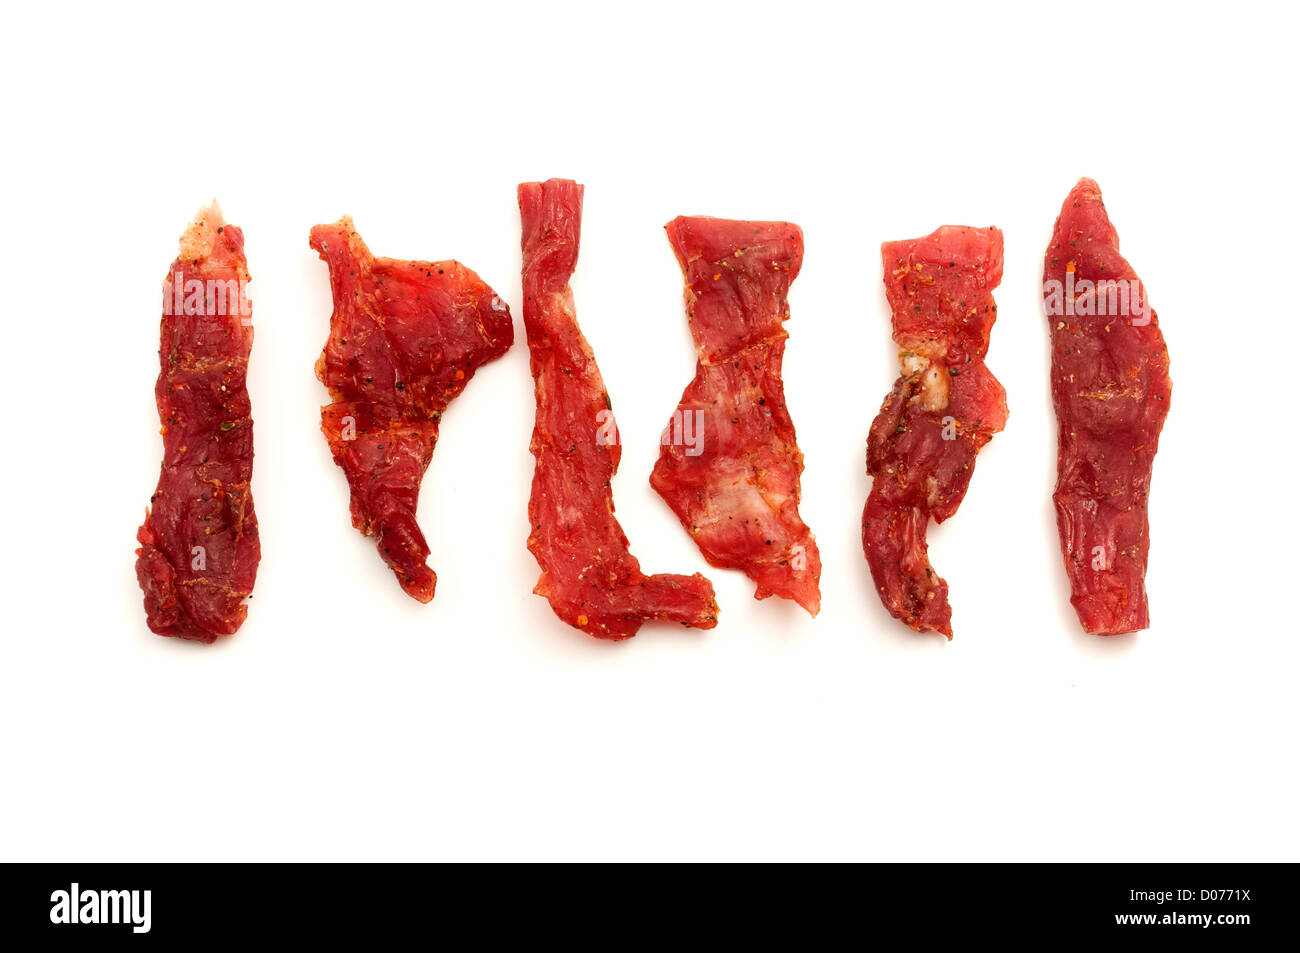 Coppiette italiano (tiras de carne de cerdo condimentado) sobre un fondo blanco. Foto de stock